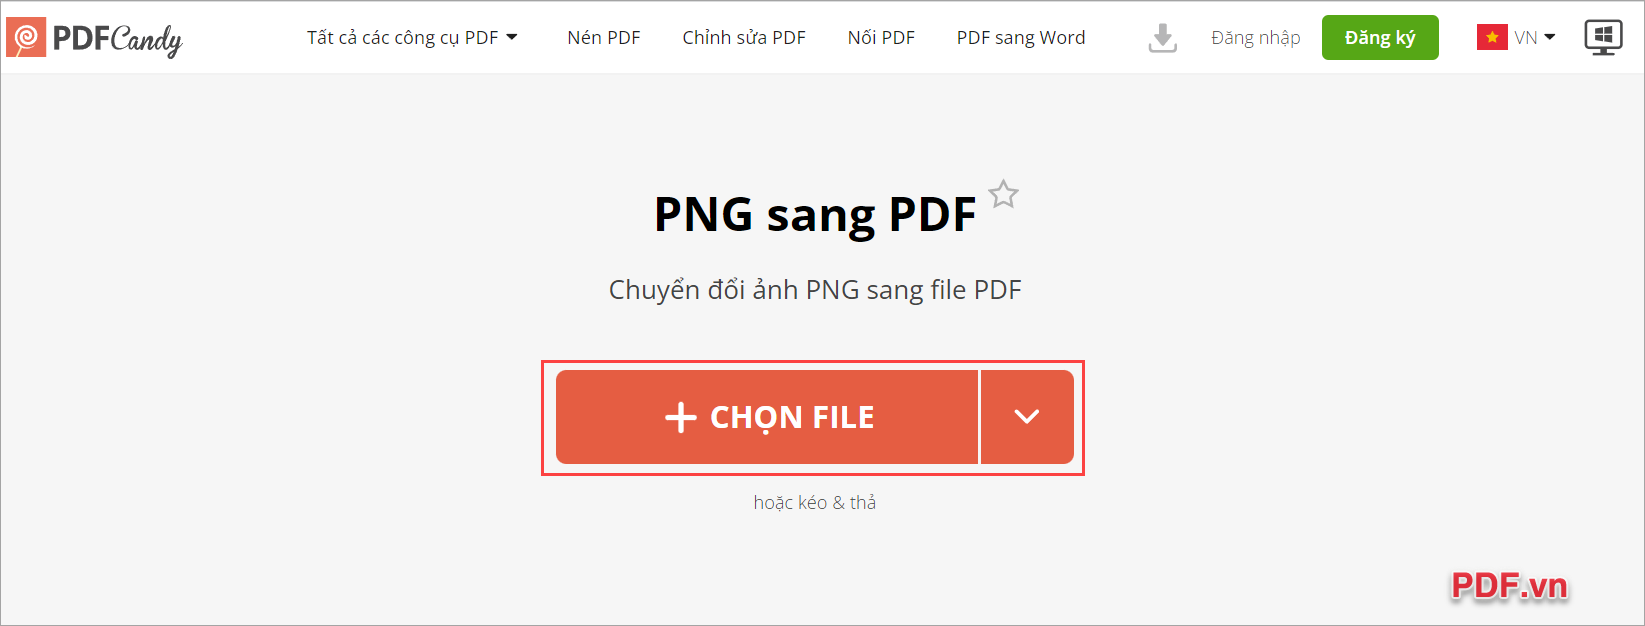 Truy cập trang chủ PDF Candy và click vào Chọn File để thêm ảnh PNG vào hệ thống